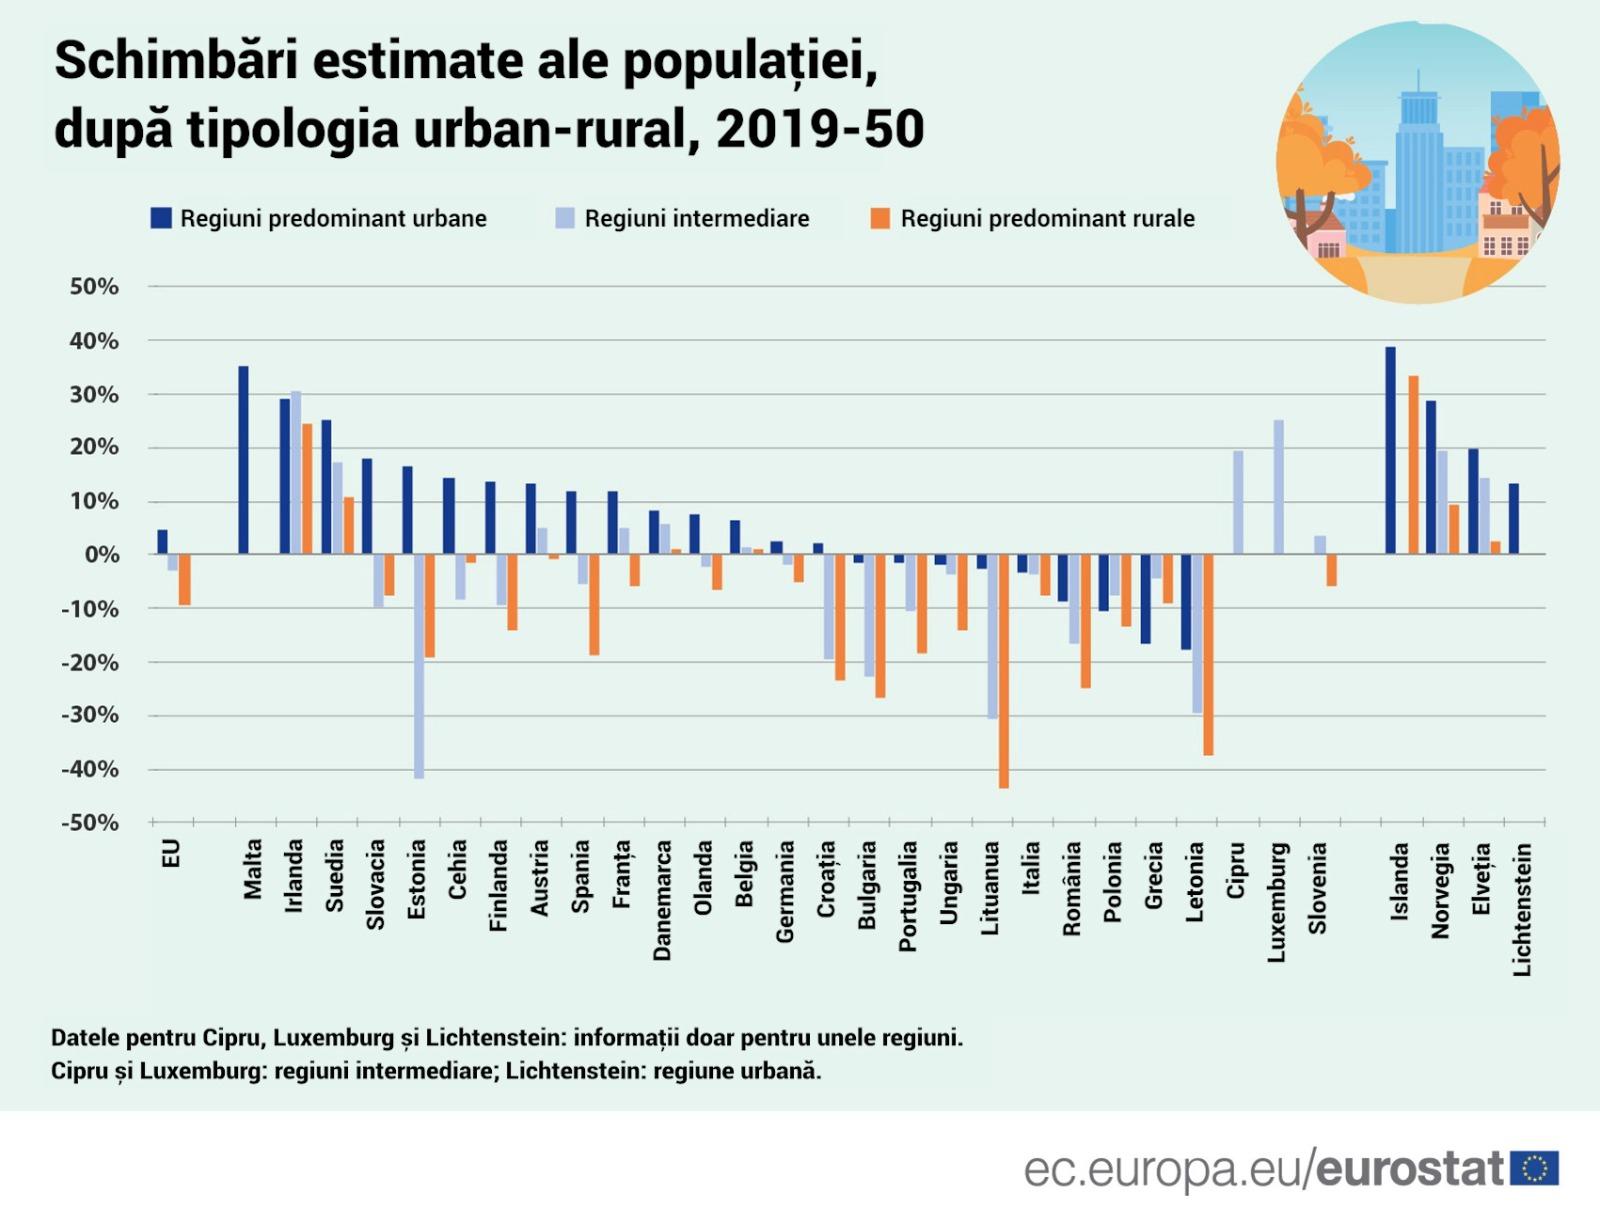 Un sfert din populaţia rurală a României dispare până în 2050. Suntem pe locul 4 în UE la cel mai mare declin al populației urbane și rurale